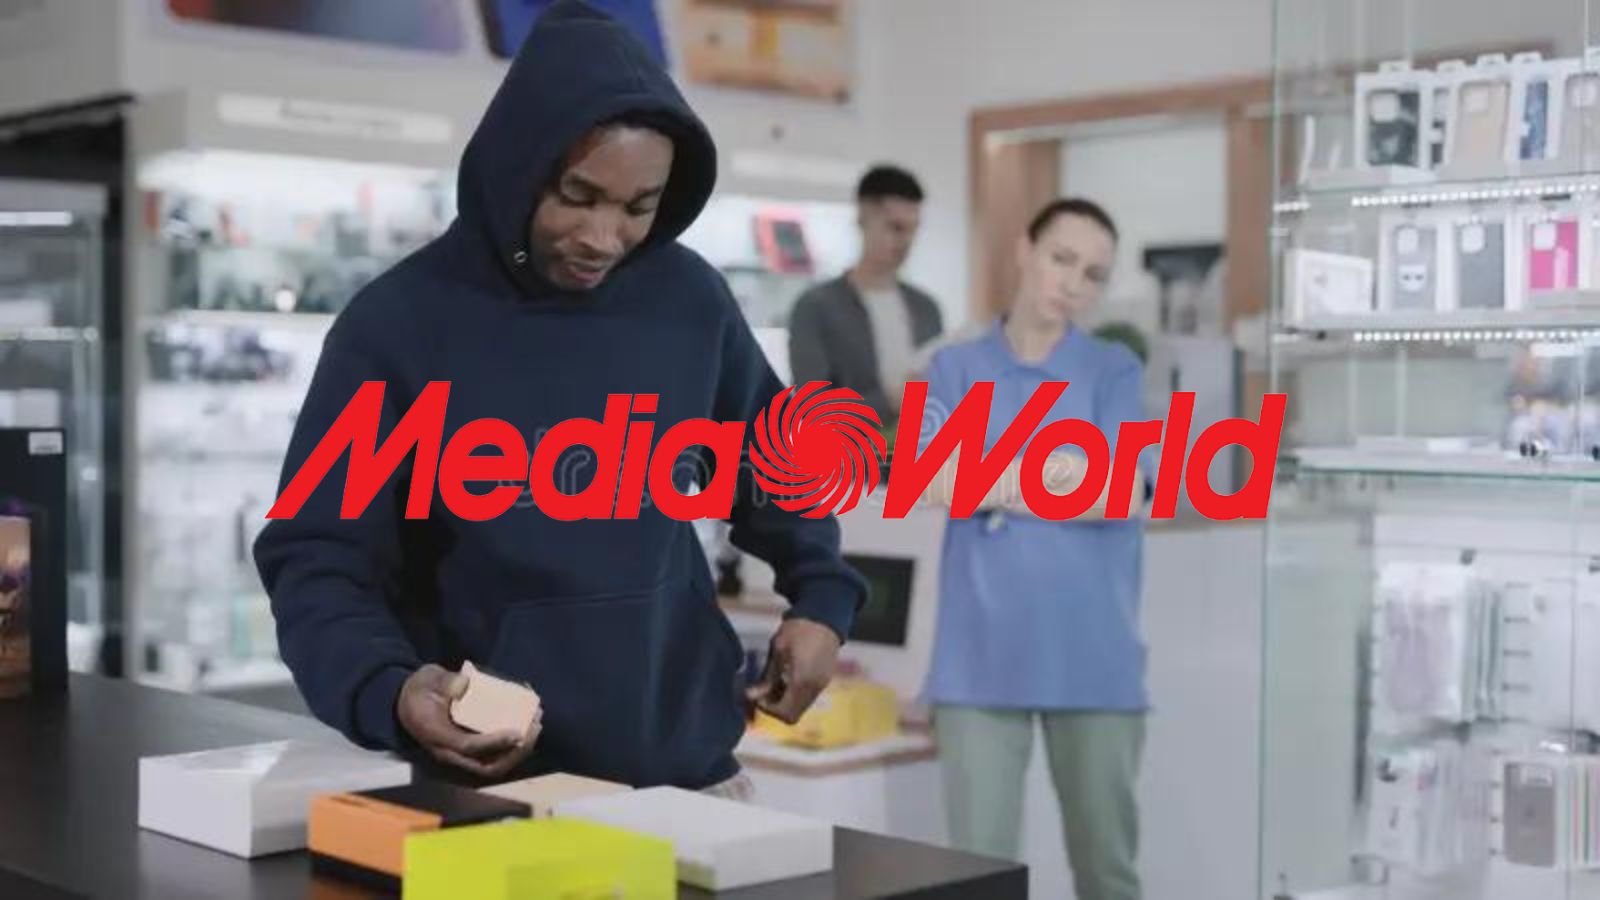 MediaWorld offre il 70% di SCONTO sui Samsung e su Apple